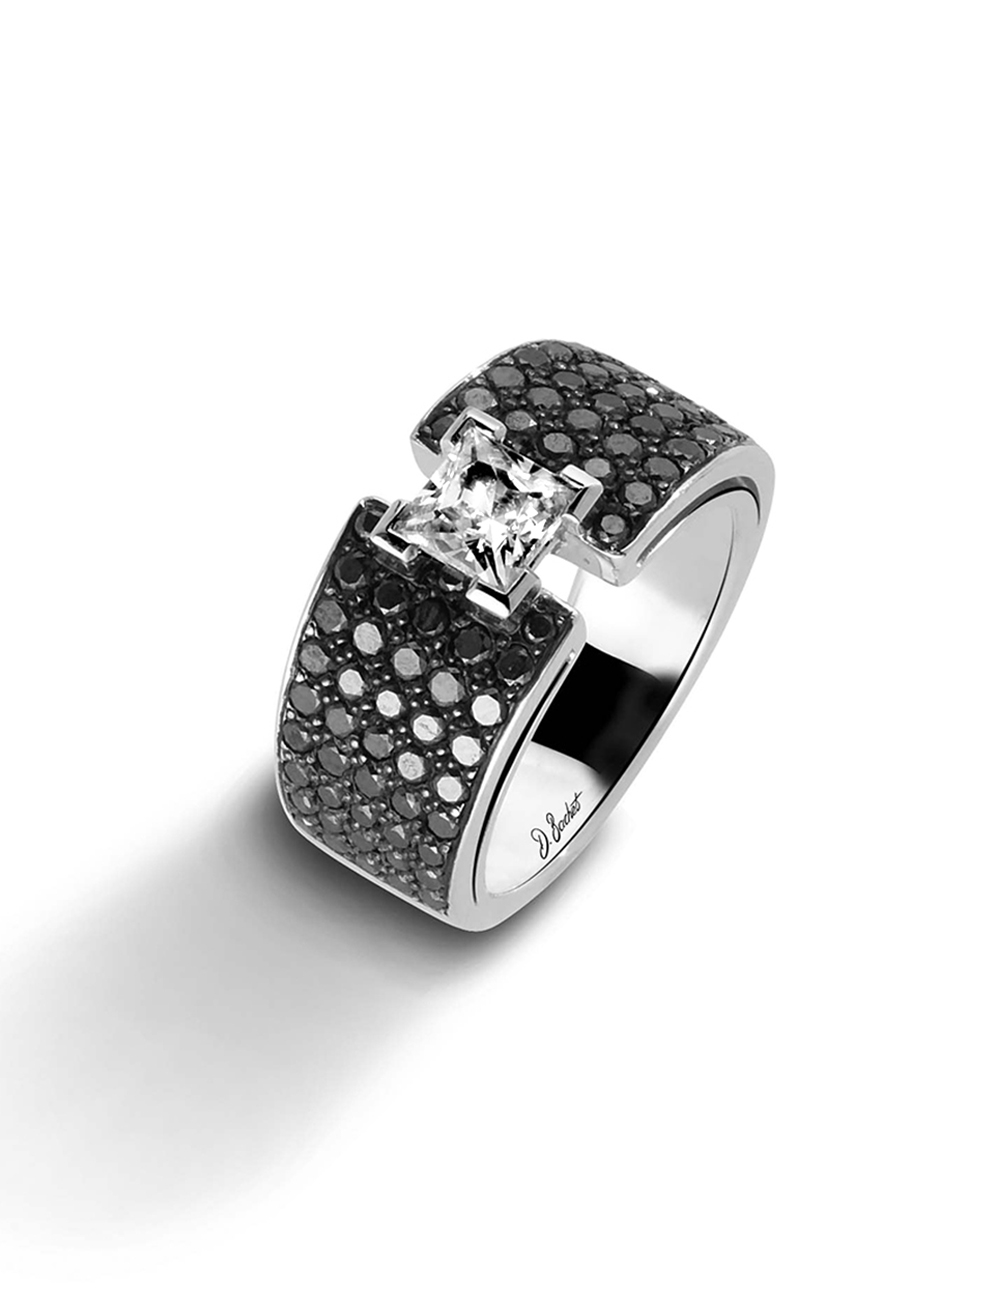 Bague luxe femme: diamant blanc princesse 0.60 ct, entouré de diamants noirs.